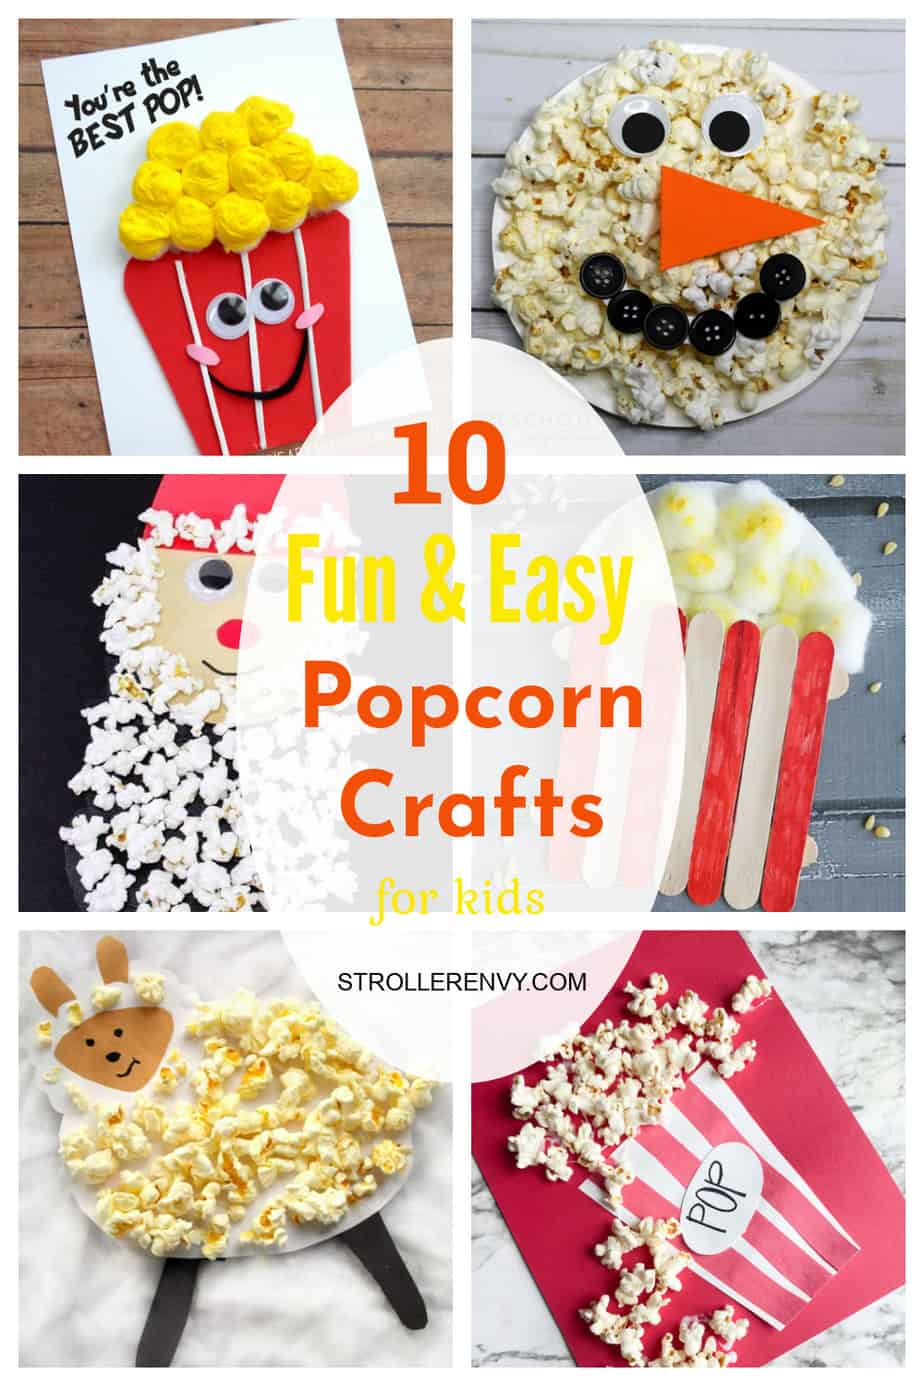 Popcorn Crafts for Kids